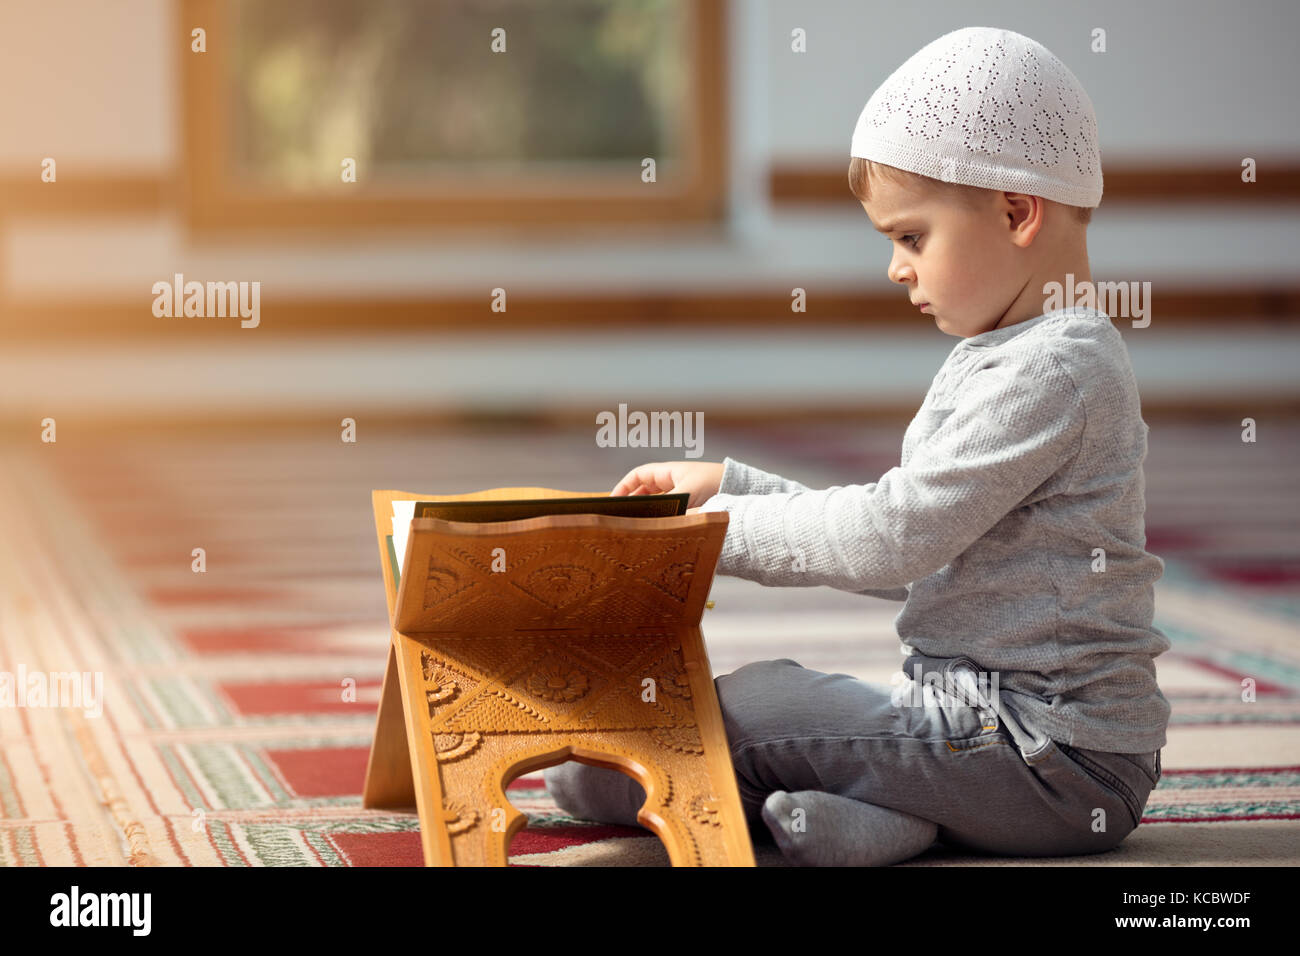 L'enfant musulman prie dans la mosquée, le petit garçon prie à Dieu, la paix et l'amour dans le mois sacré du ramadan. Banque D'Images